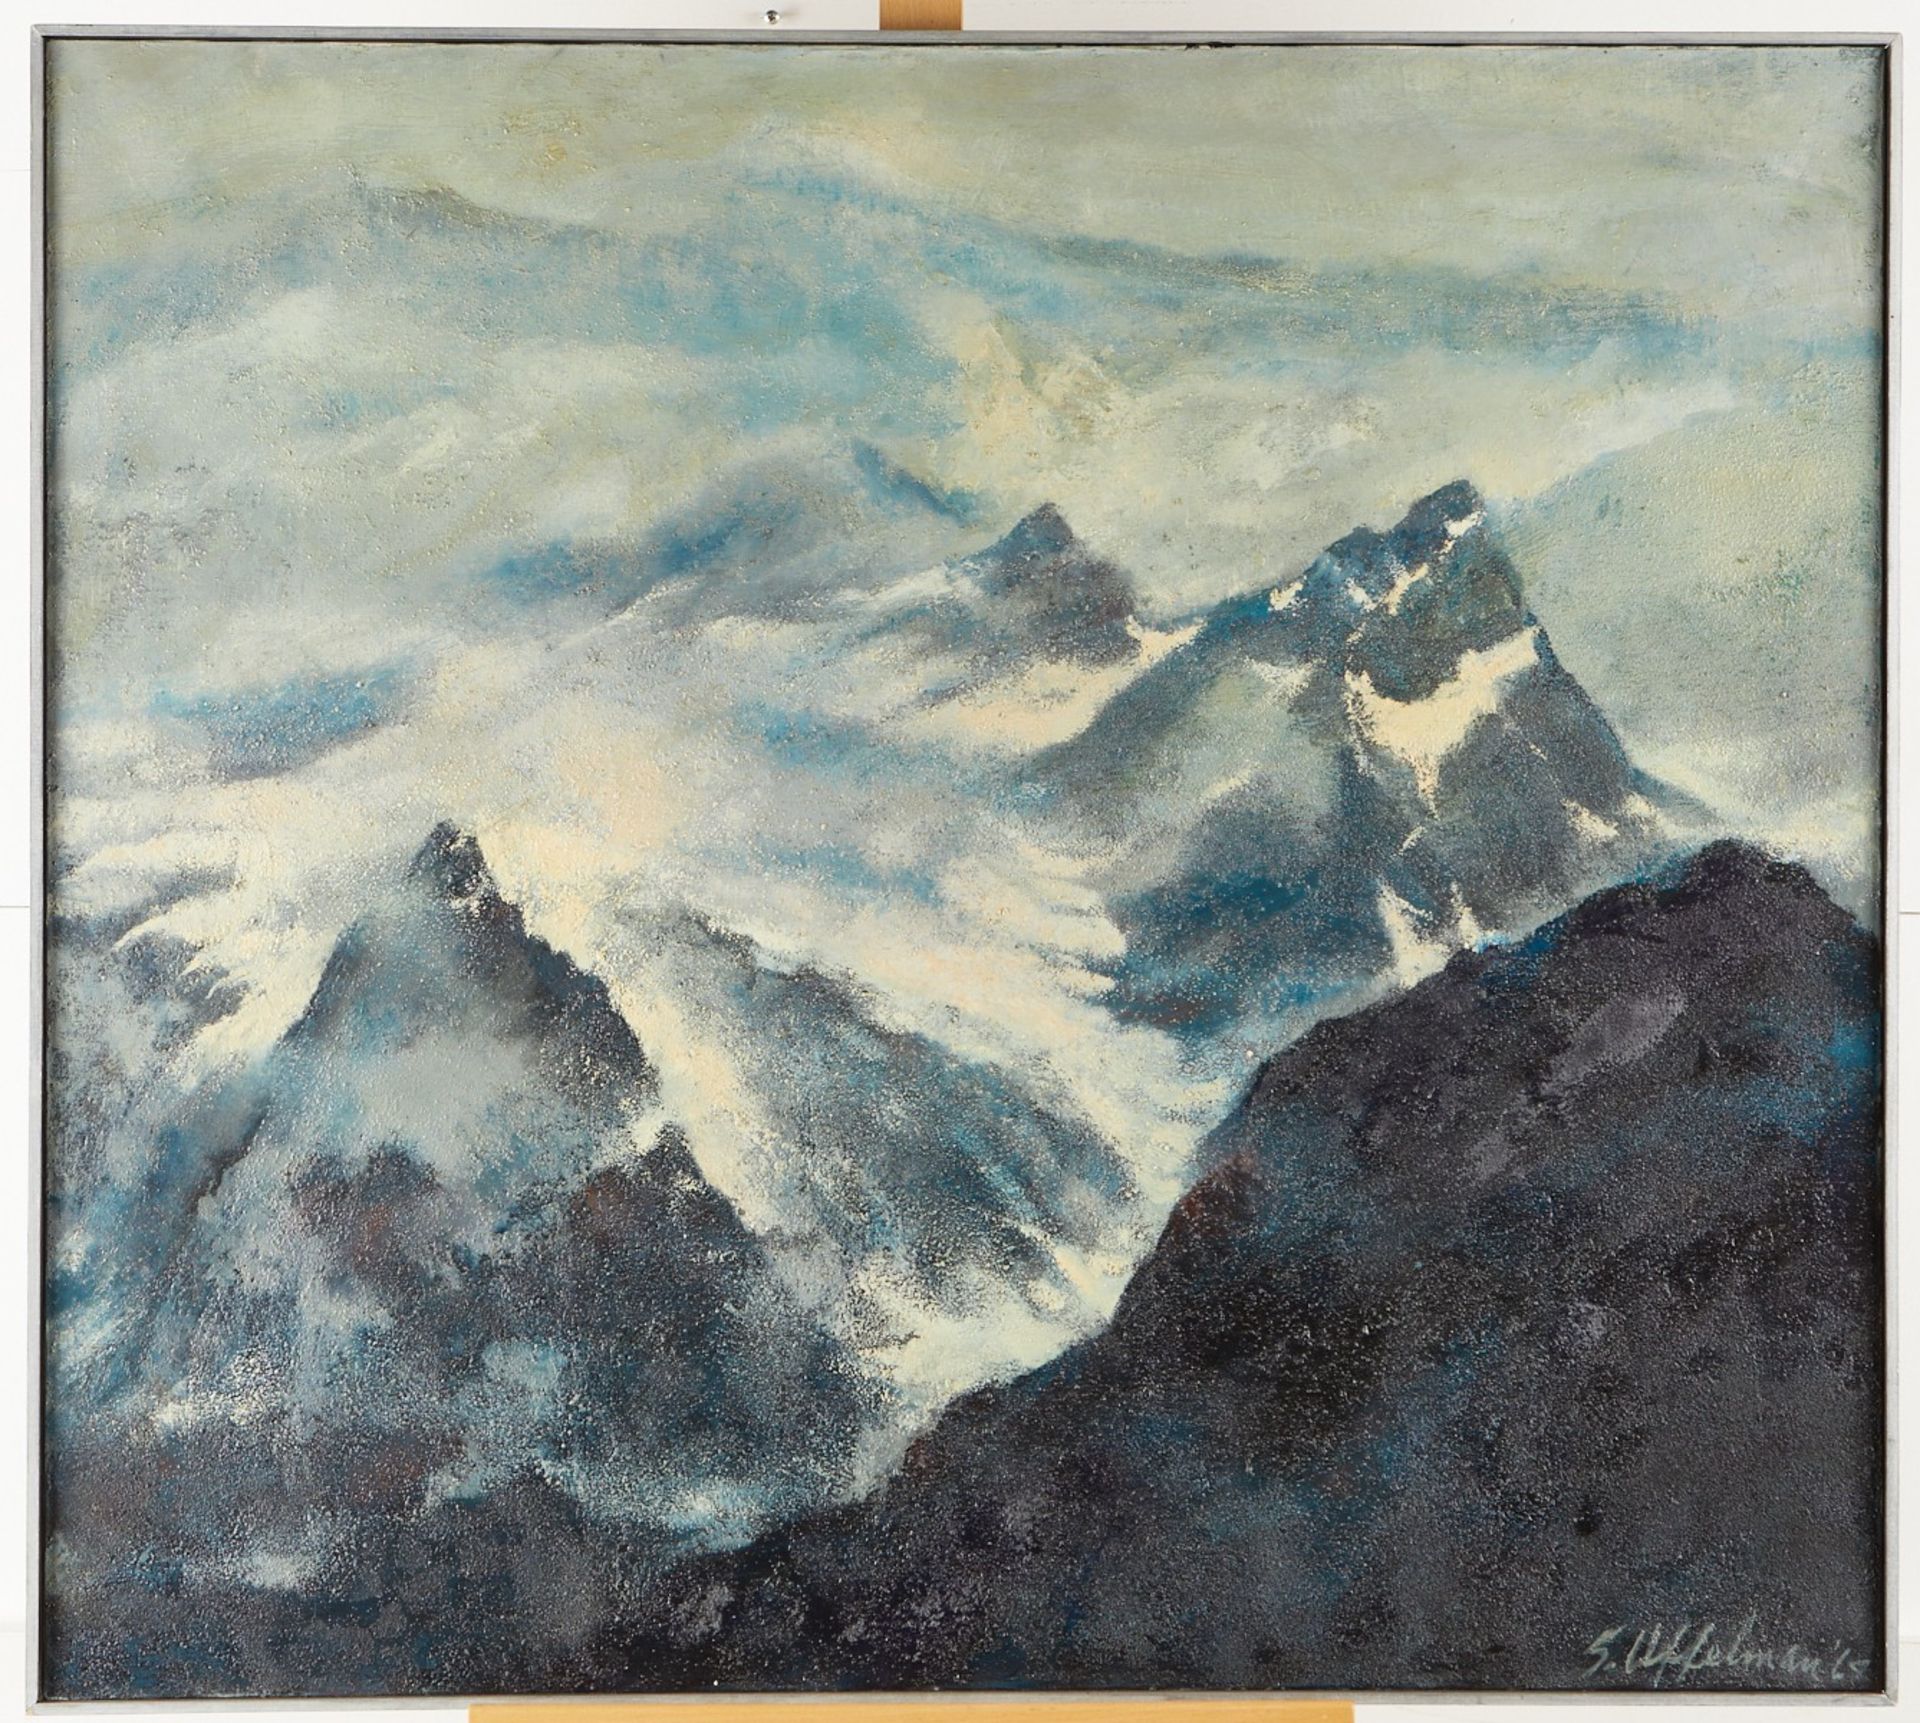 Uffelman "Untitled (Mountain Scene)" Oil on Canvas - Bild 2 aus 4